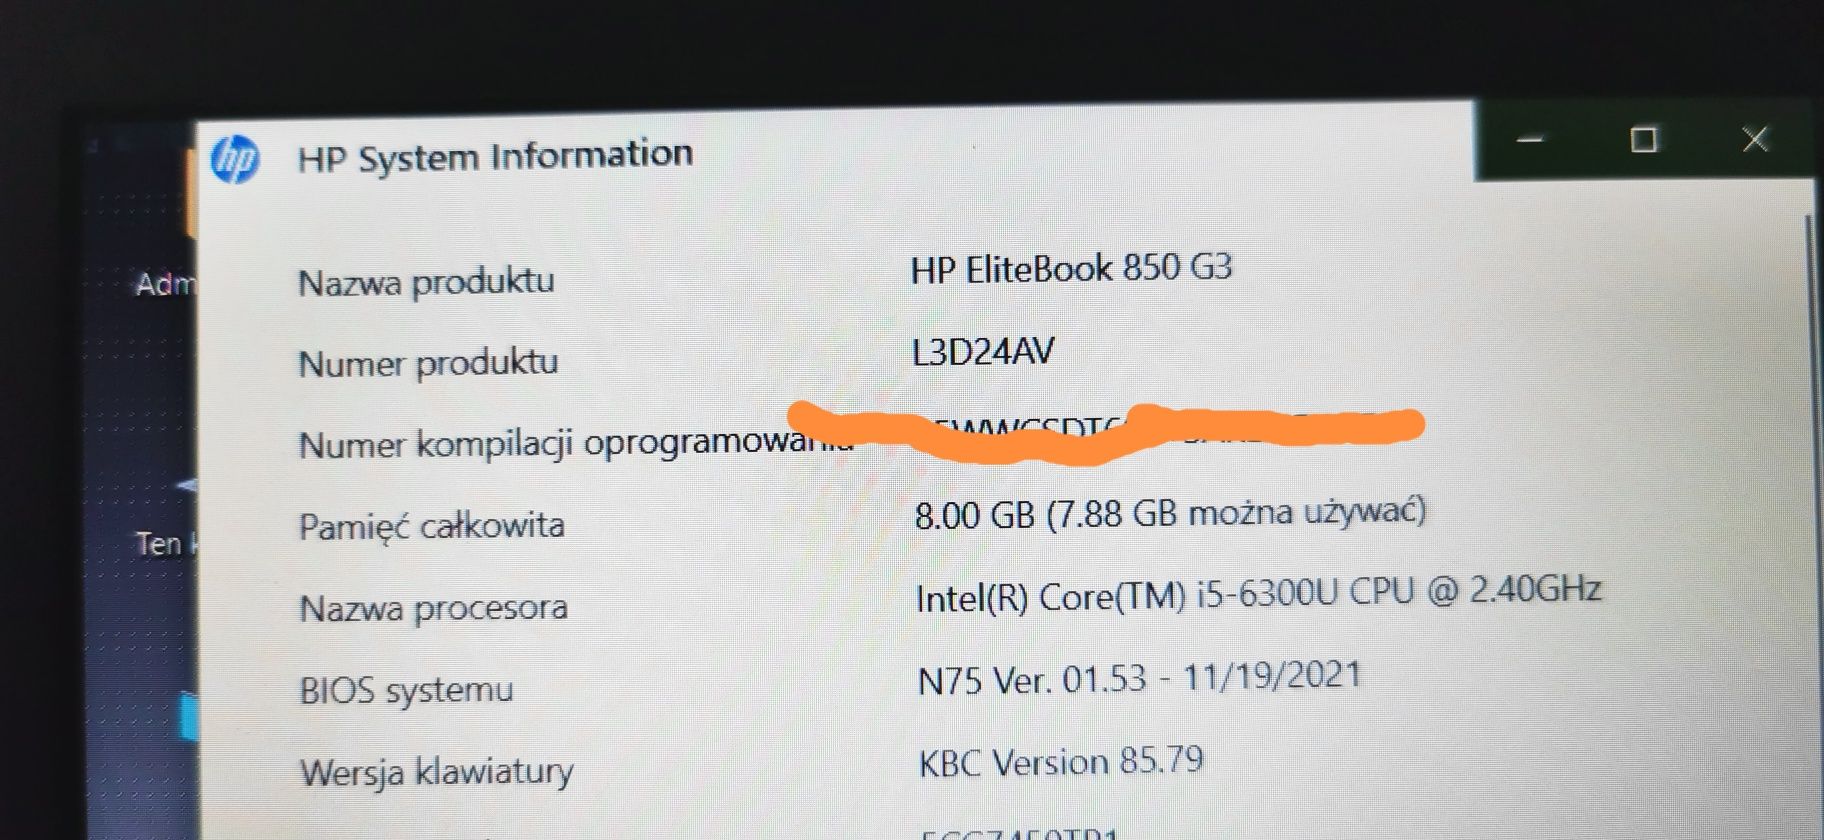 HP Elitebook 850 G3 i5 6300U 2.40 GHz 240 gb ssd win 10 pro